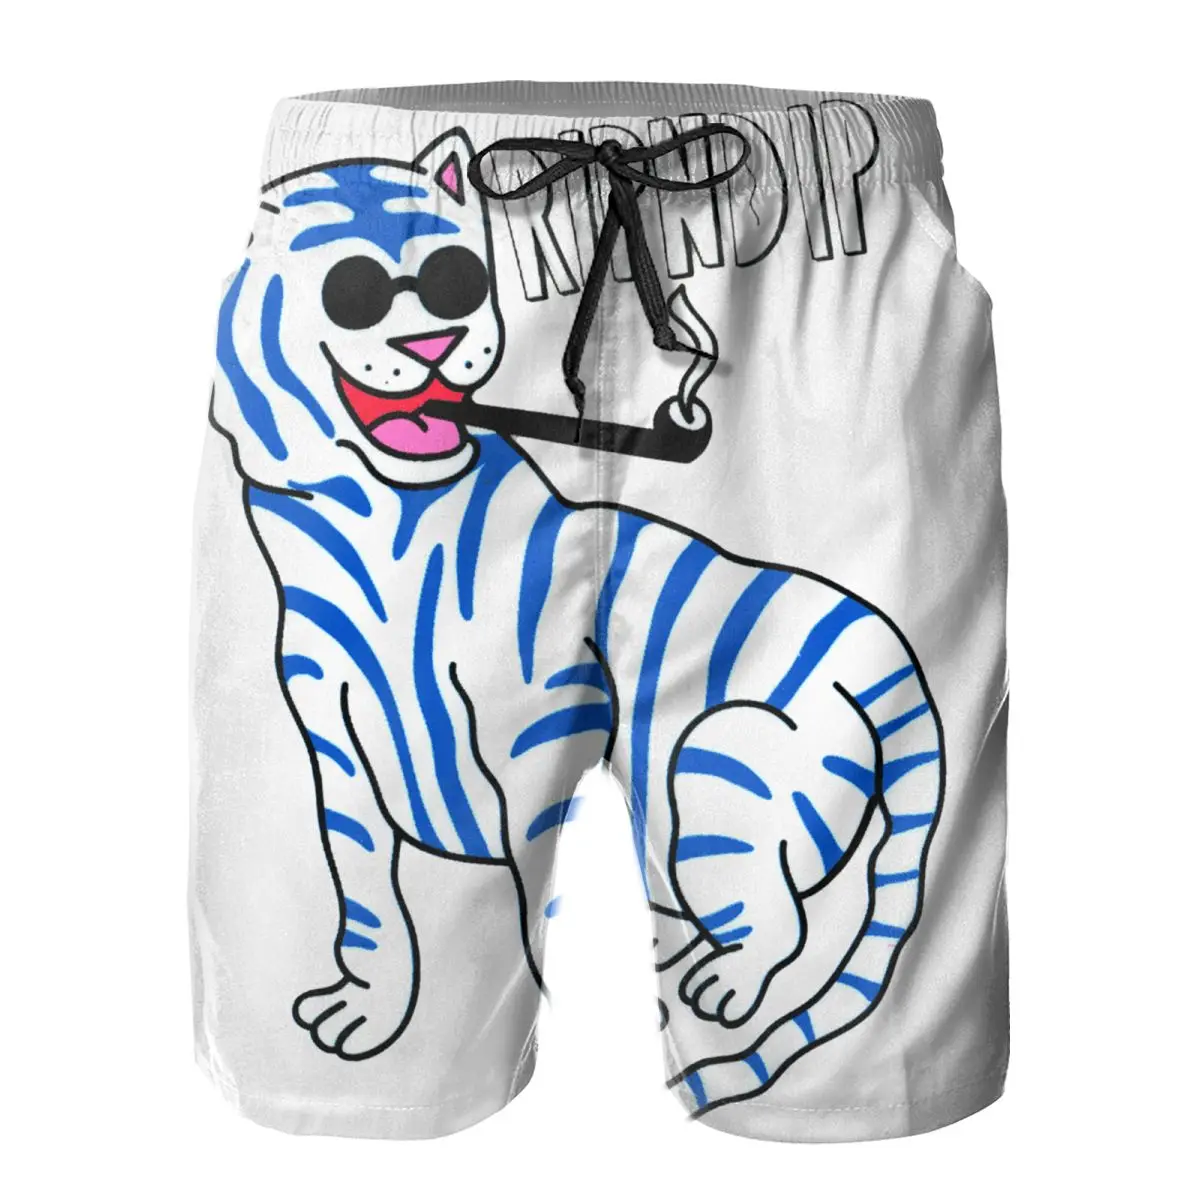 

Мужские быстросохнущие плавки R.Ip N-DiP, пляжные шорты в цветную полоску с сетчатой подкладкой